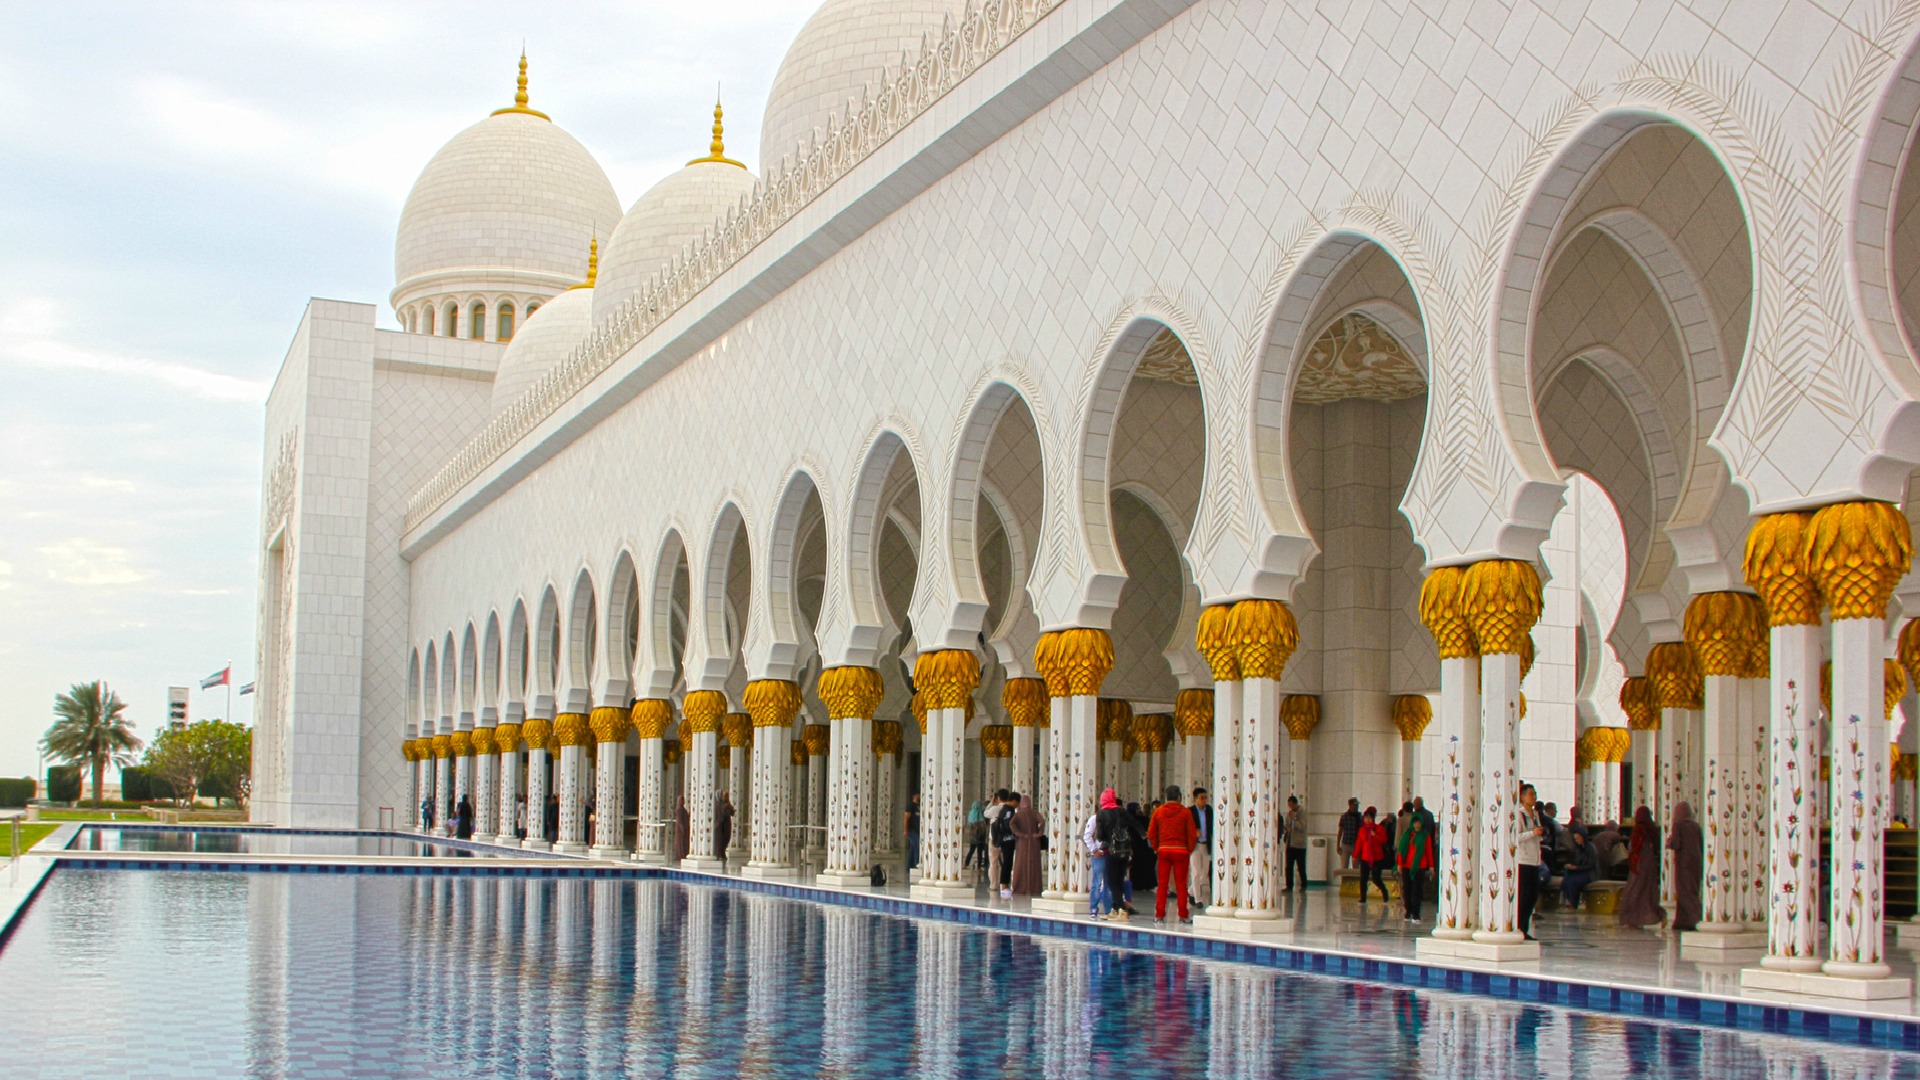 Bienvenidos a Abu Dhabi, una de las capitales mundiales del lujo